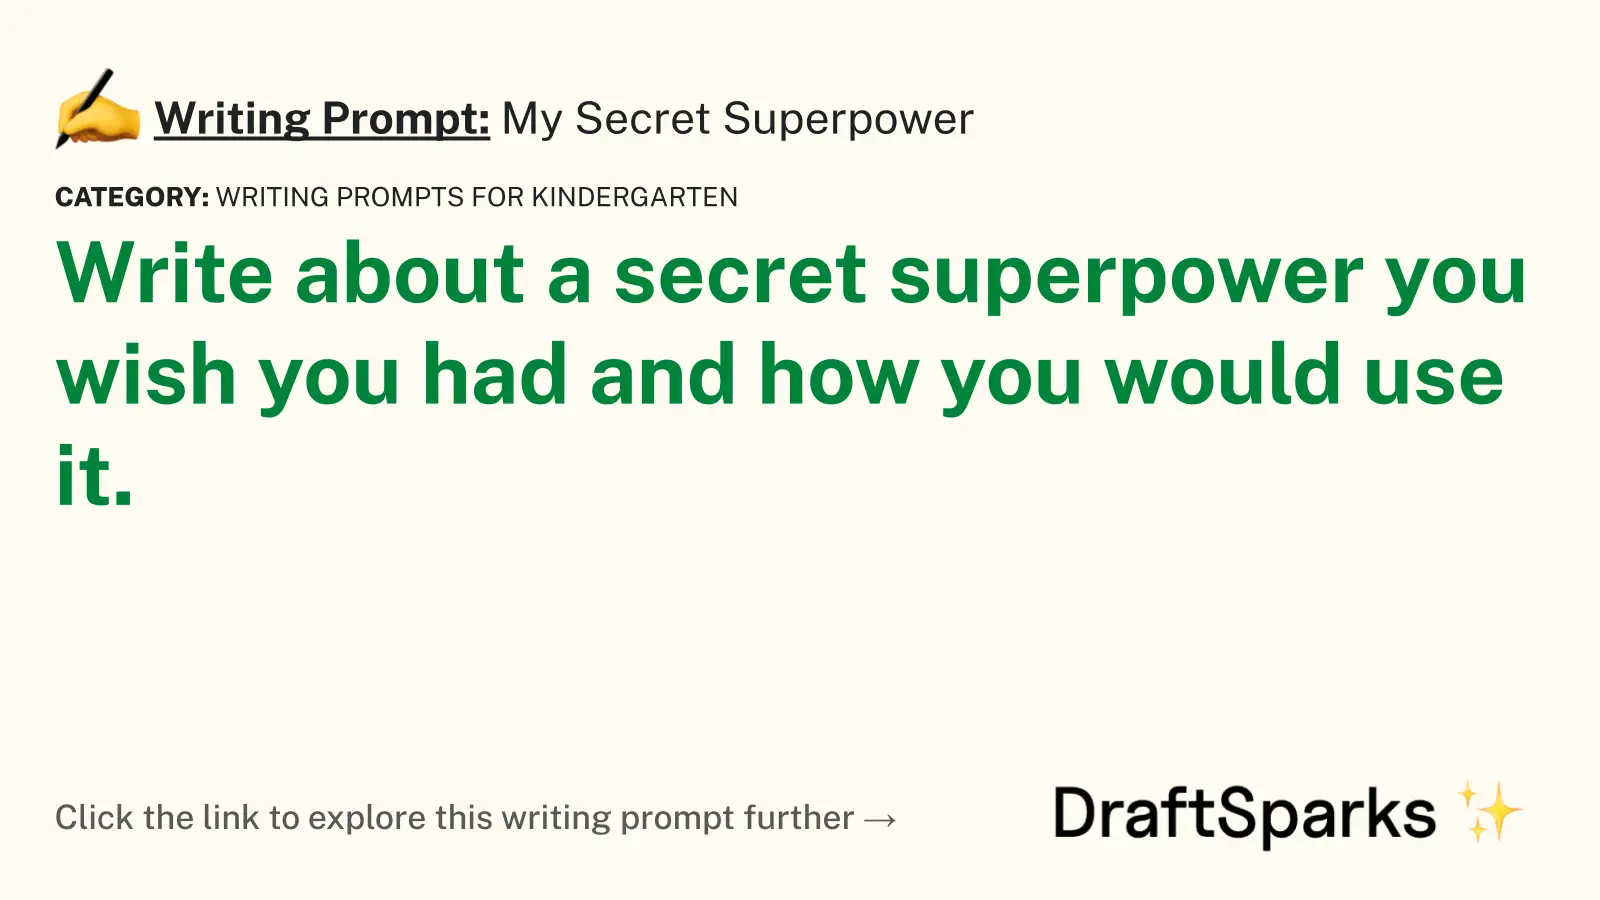 My Secret Superpower